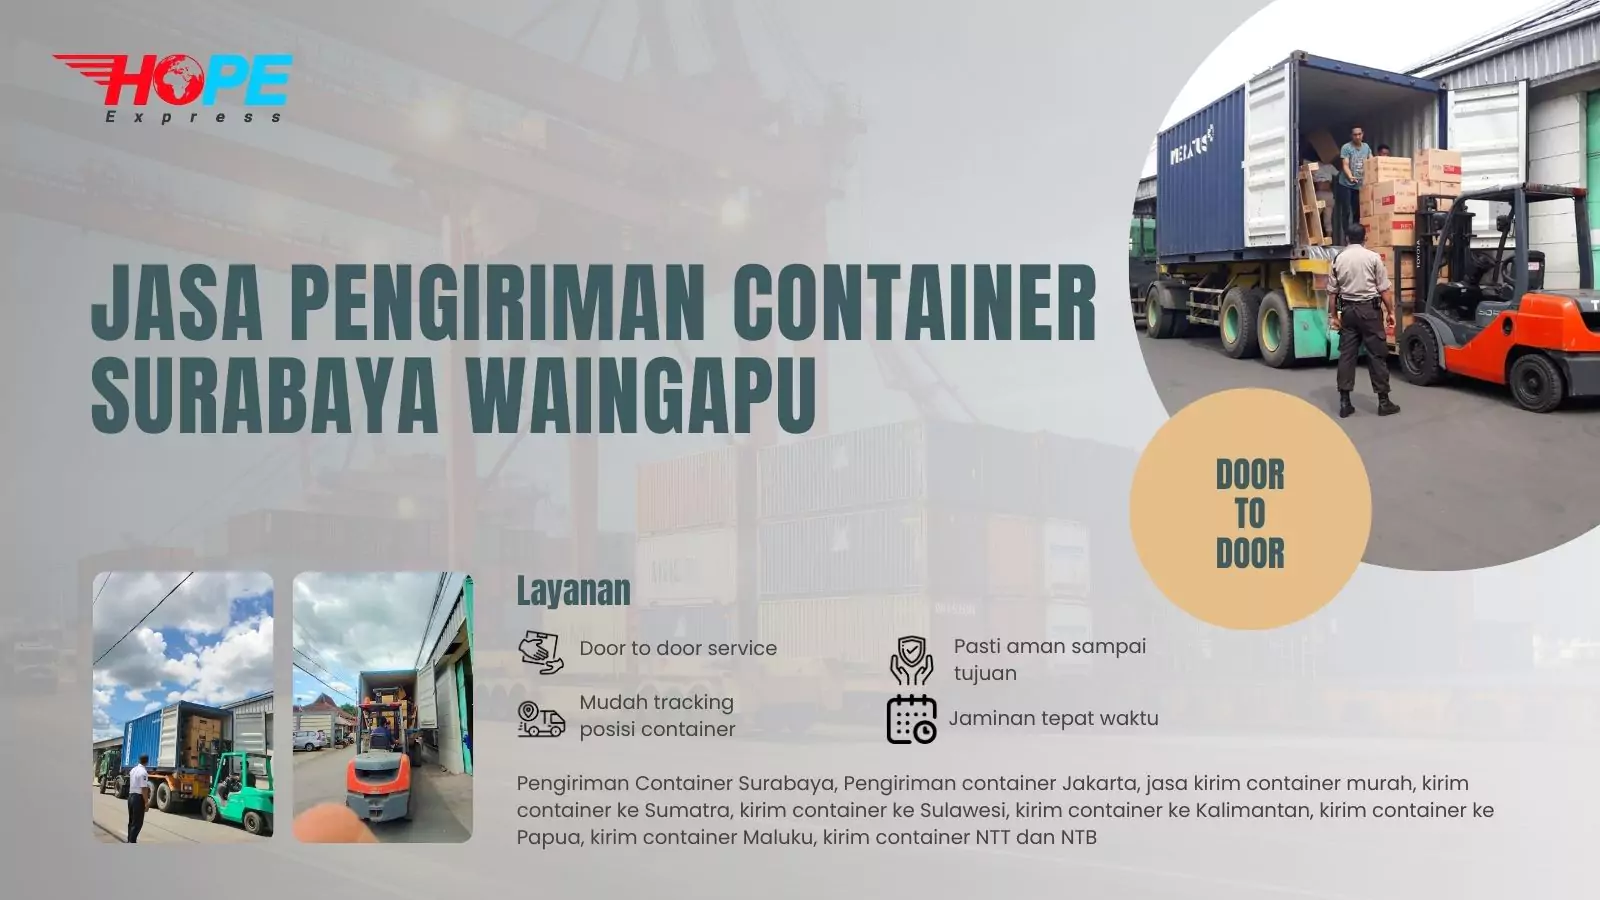 Jasa Pengiriman Container Surabaya Waingapu